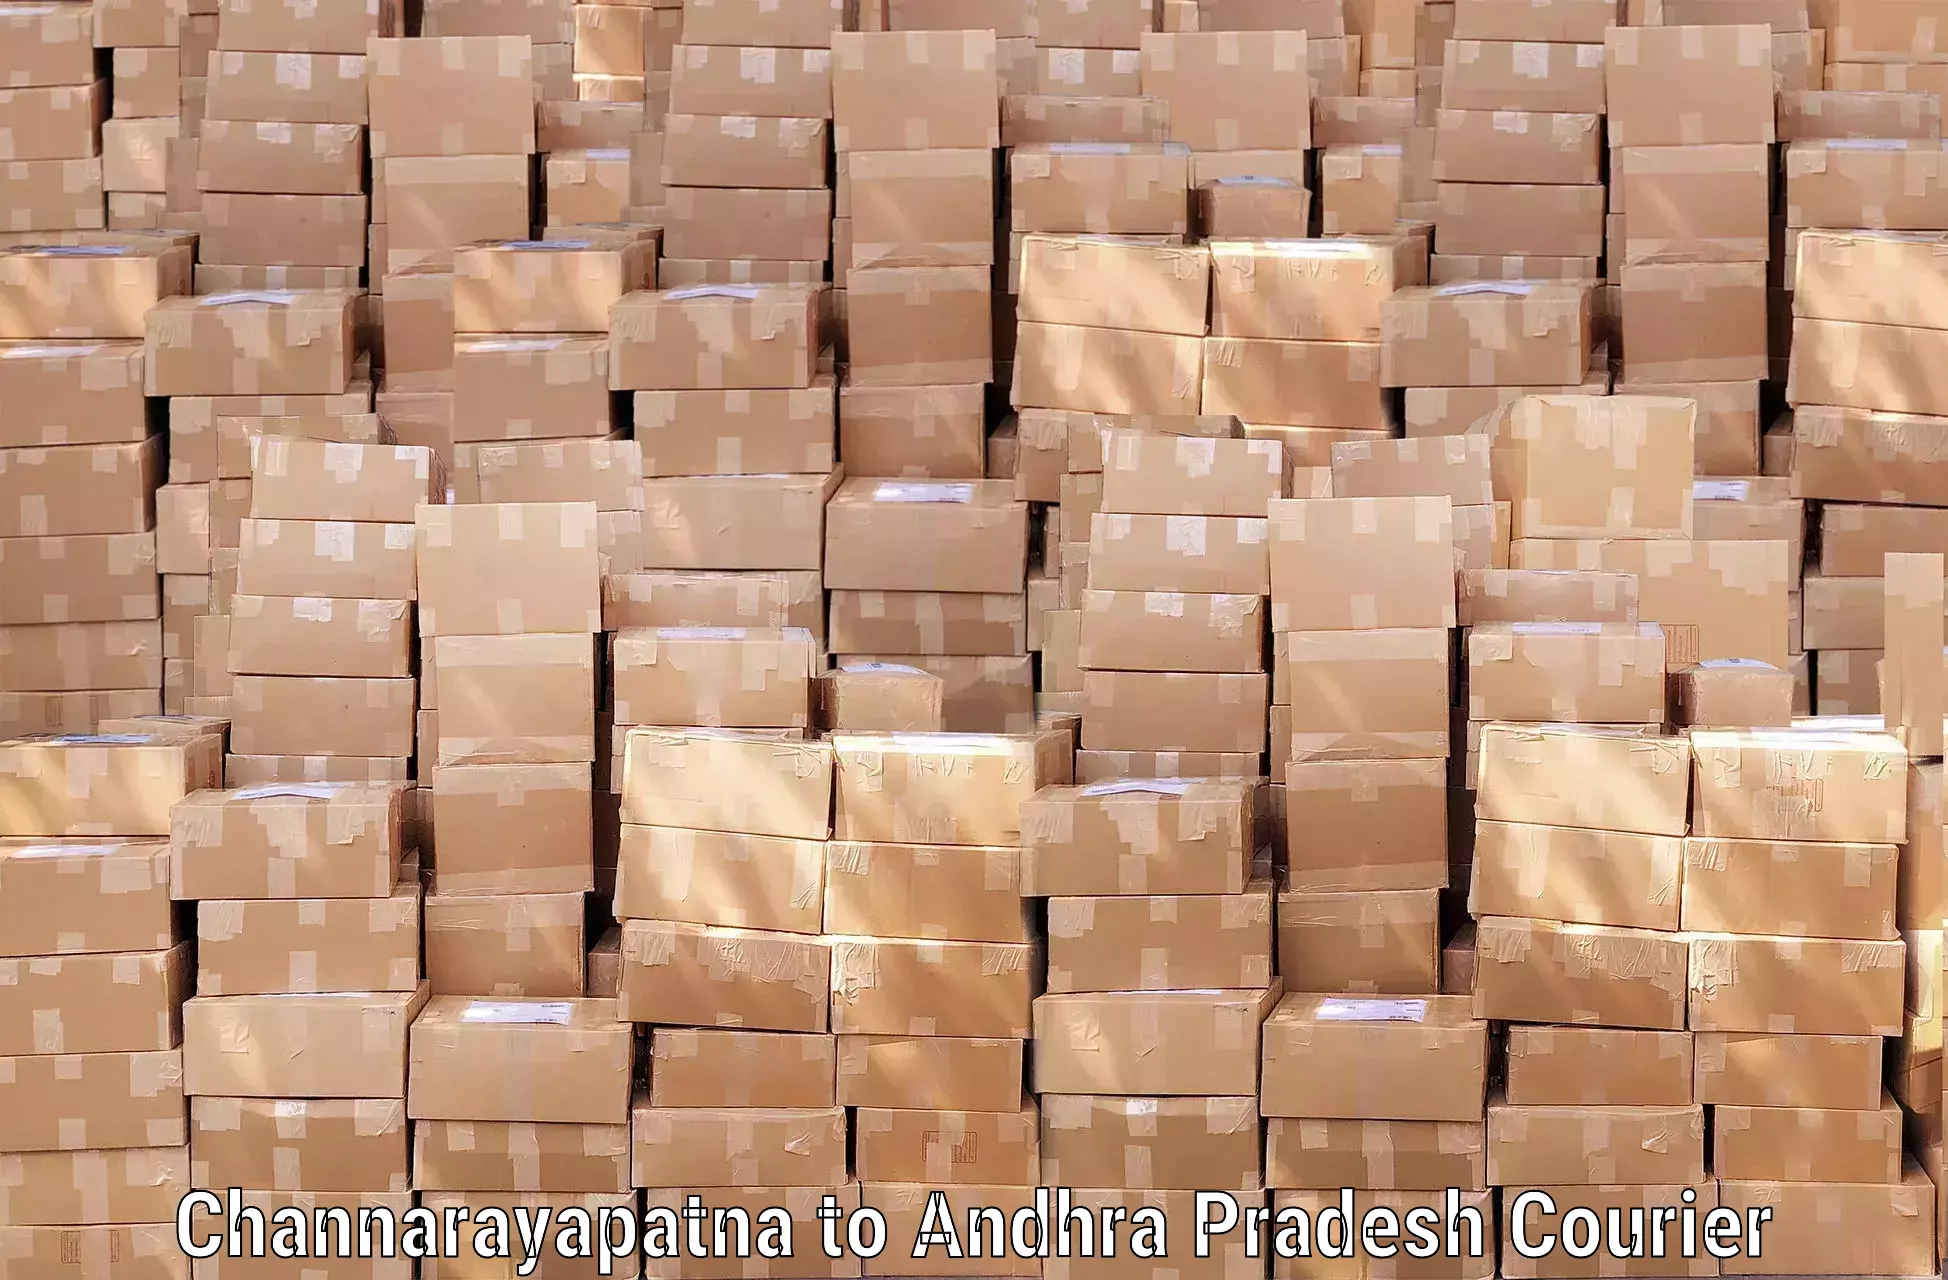 Baggage shipping service Channarayapatna to Andhra Pradesh